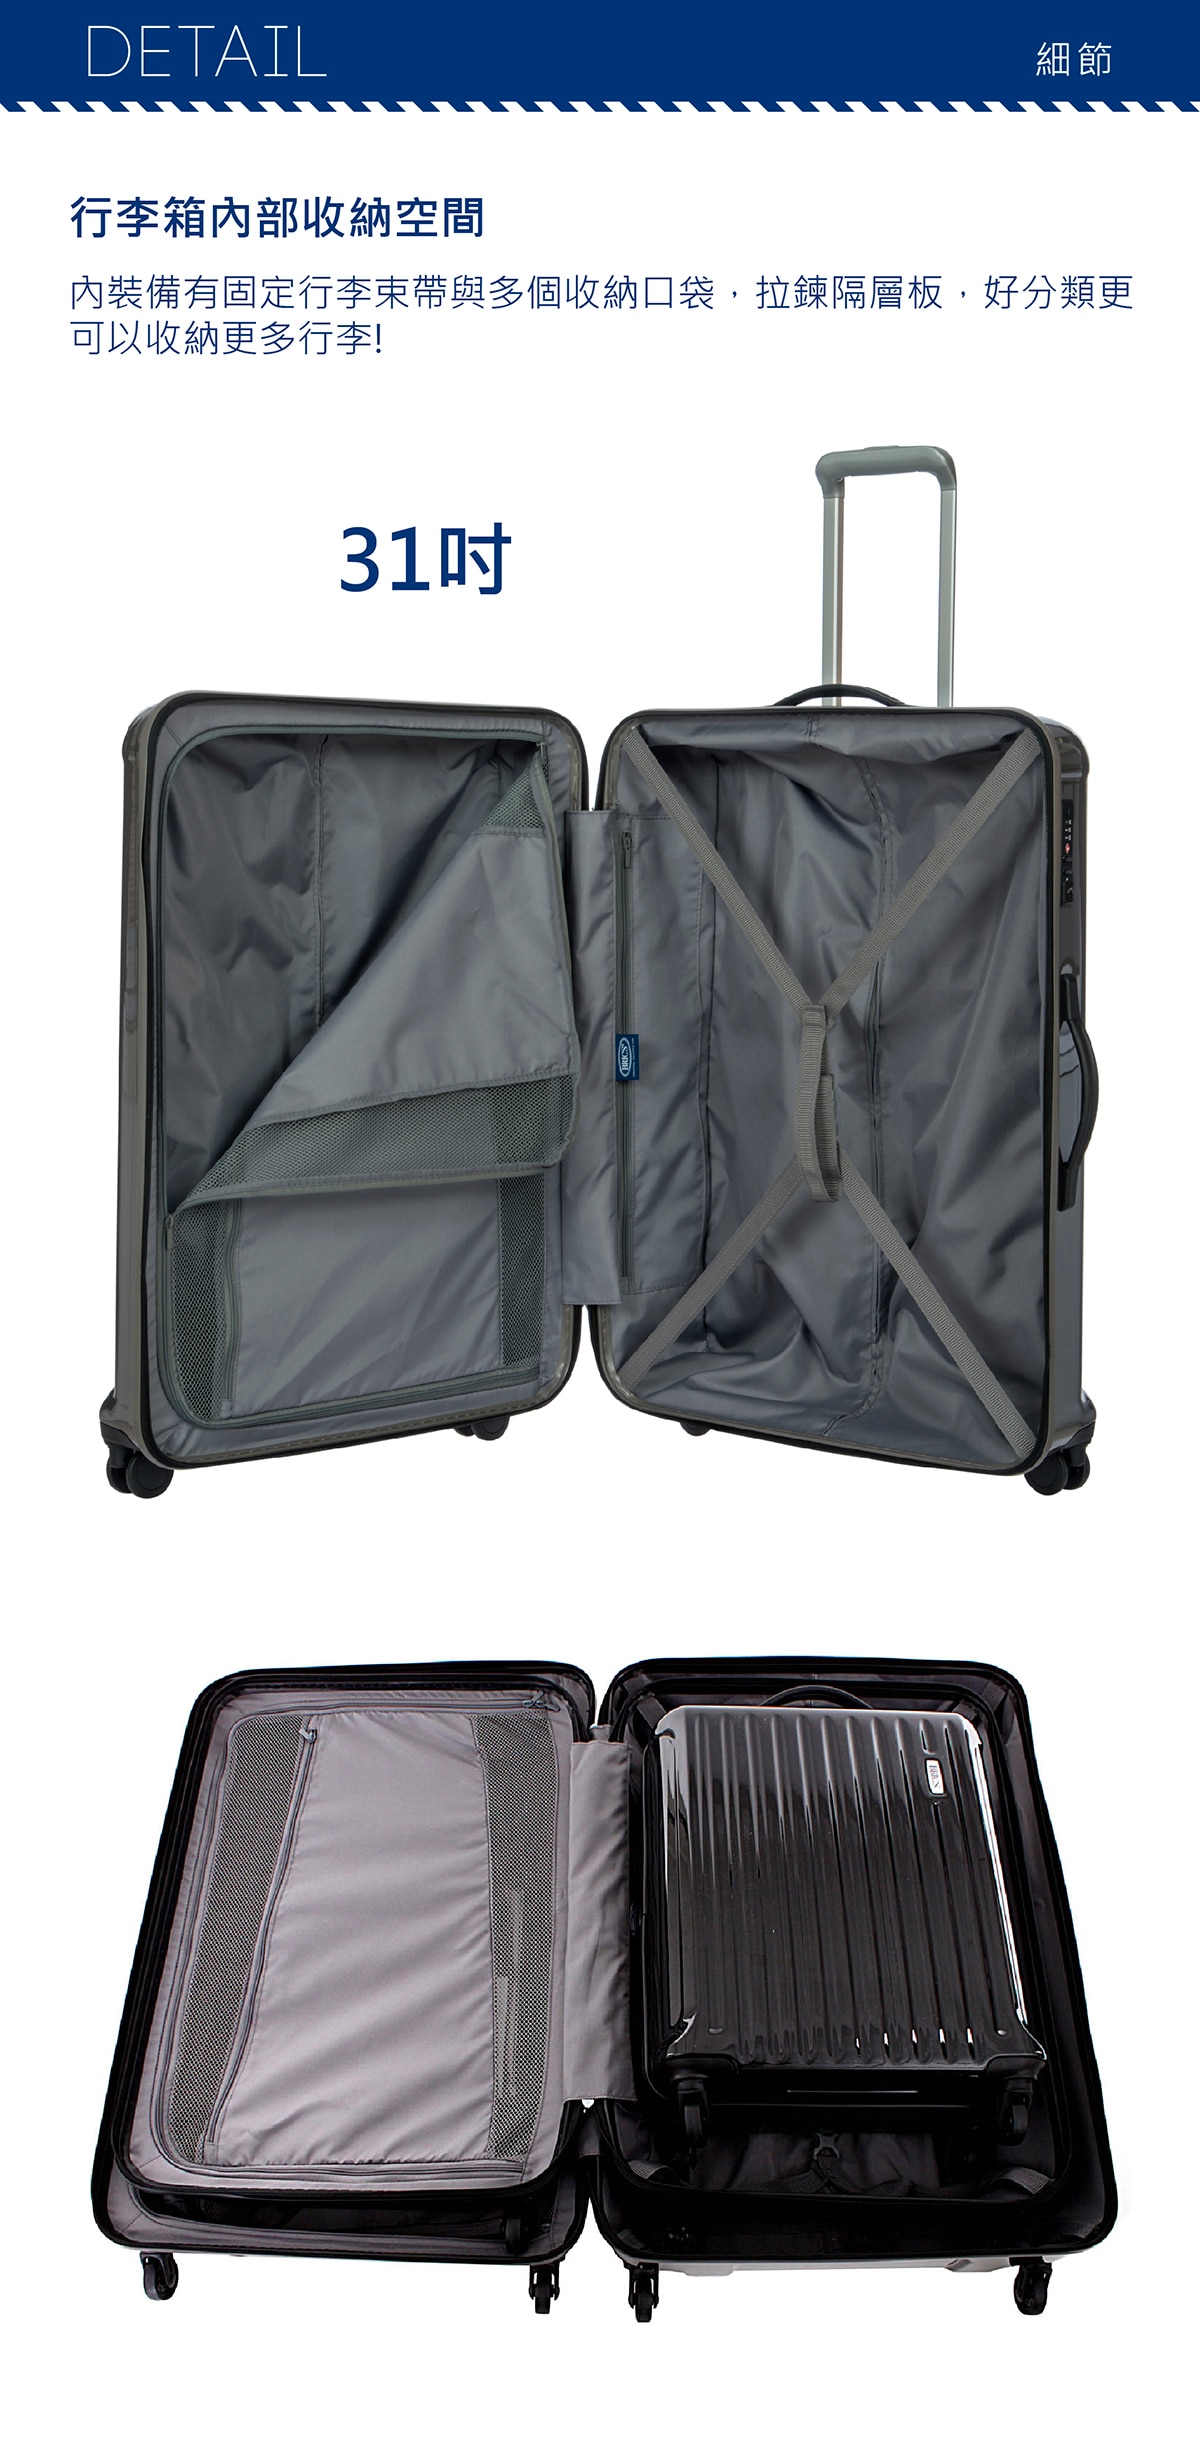 BRIC'S 32吋銀色行李箱,行李箱備有固定行李束帶與多個收納口袋,拉鏈隔層板,好分類更可以收納更多行李.